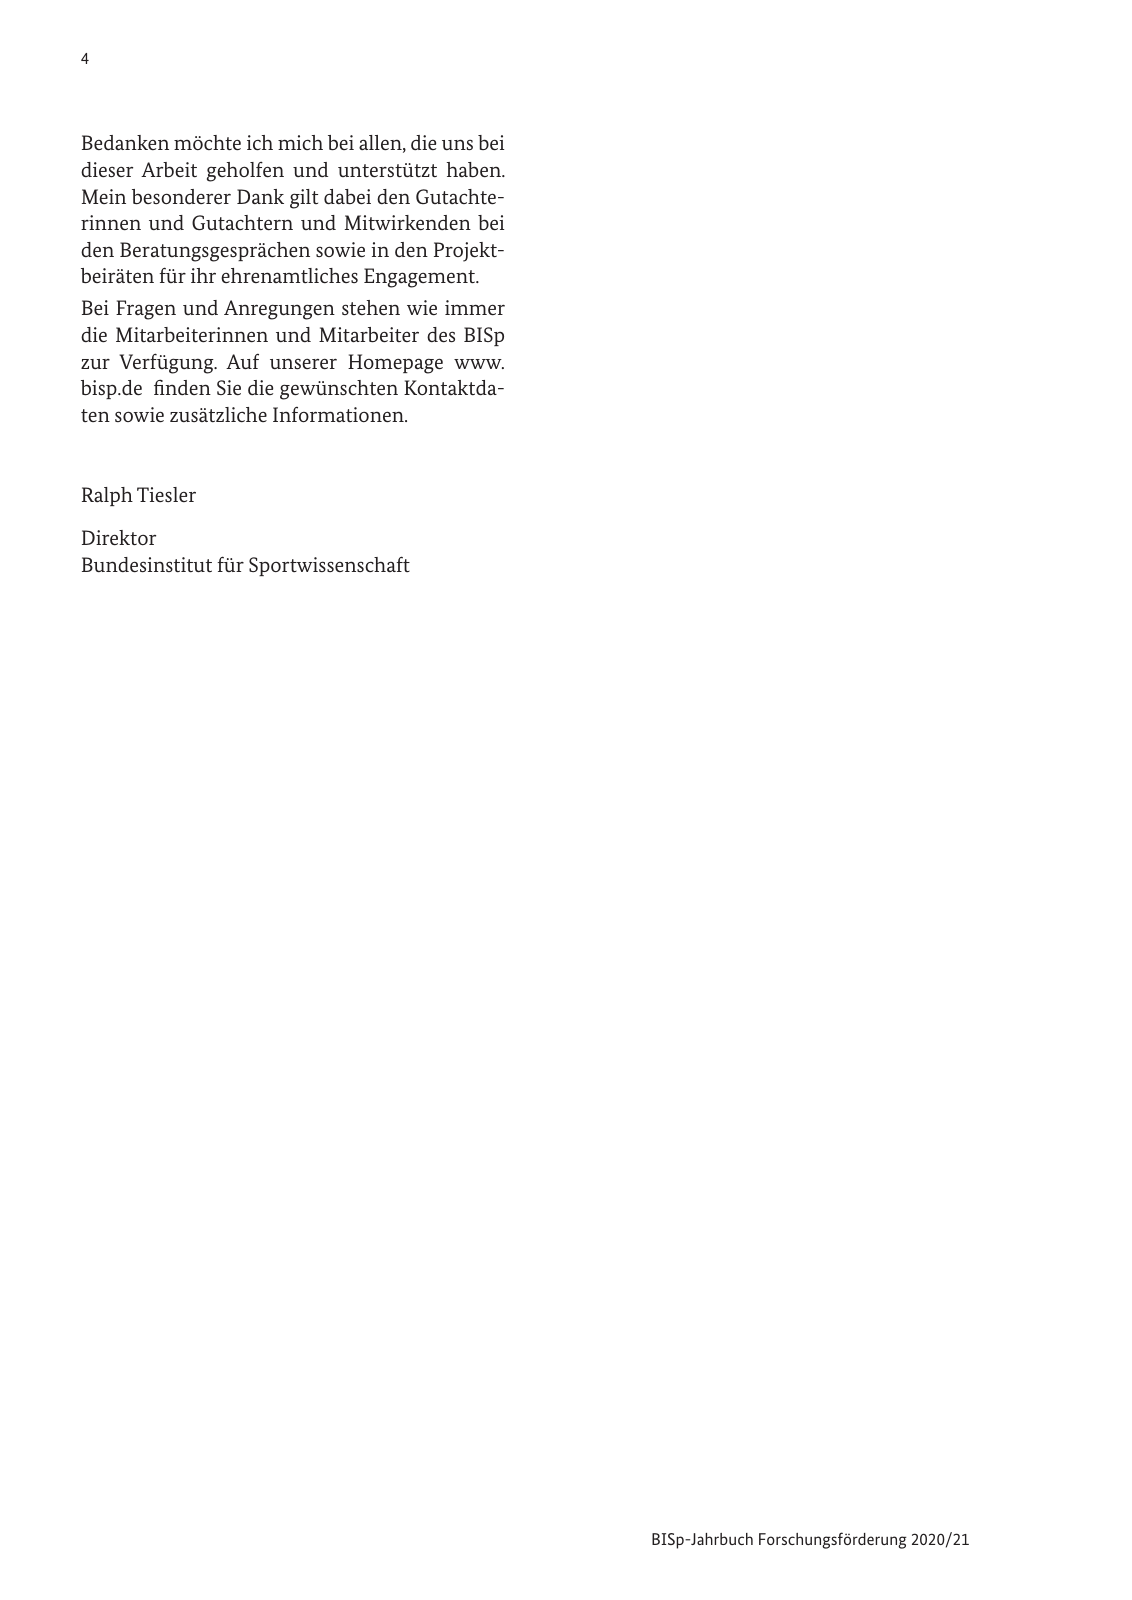 Vorschau BISp-Jahrbuch 2020/21 Seite 6